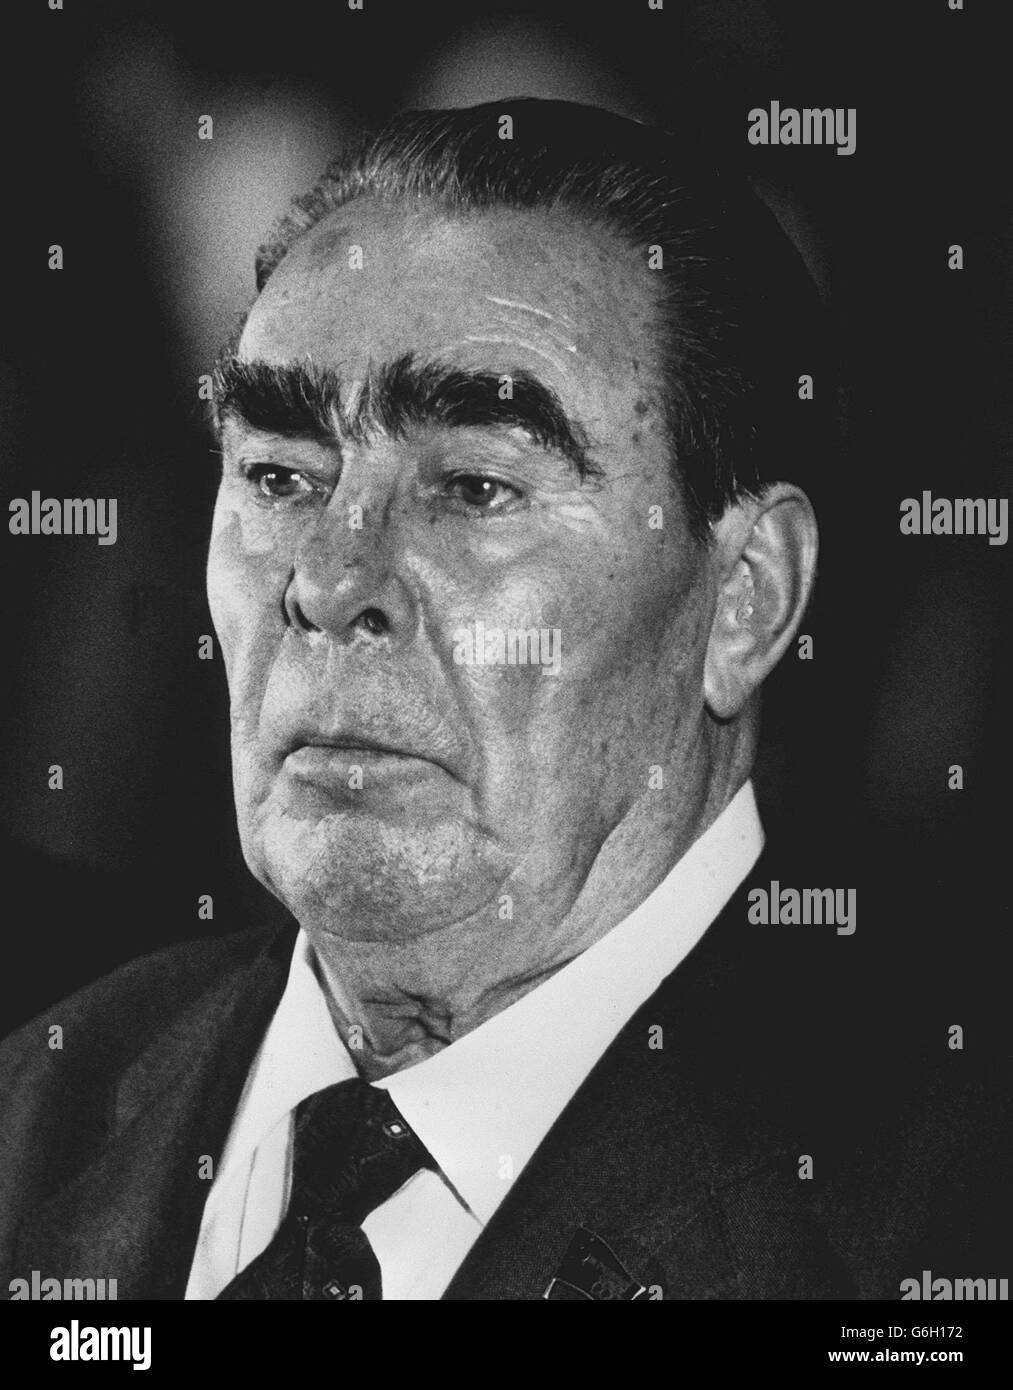 15 OCTOBRE: CE JOUR EN 1964, LEONID BREJNEV DÉPOSE NIKITA KRUSCHCHEV POUR DEVENIR LE CHEF DE LA RUSSIE SOVIÉTIQUE.KRUSCHEV ÉTAIT EN VACANCES LORSQU'IL A ENTENDU le dirigeant soviétique né en Ukraine Leonid Brejnev, qui est secrétaire général du Parti communiste soviétique depuis 1966.11/11/1982: Décès de Brejnev. Banque D'Images